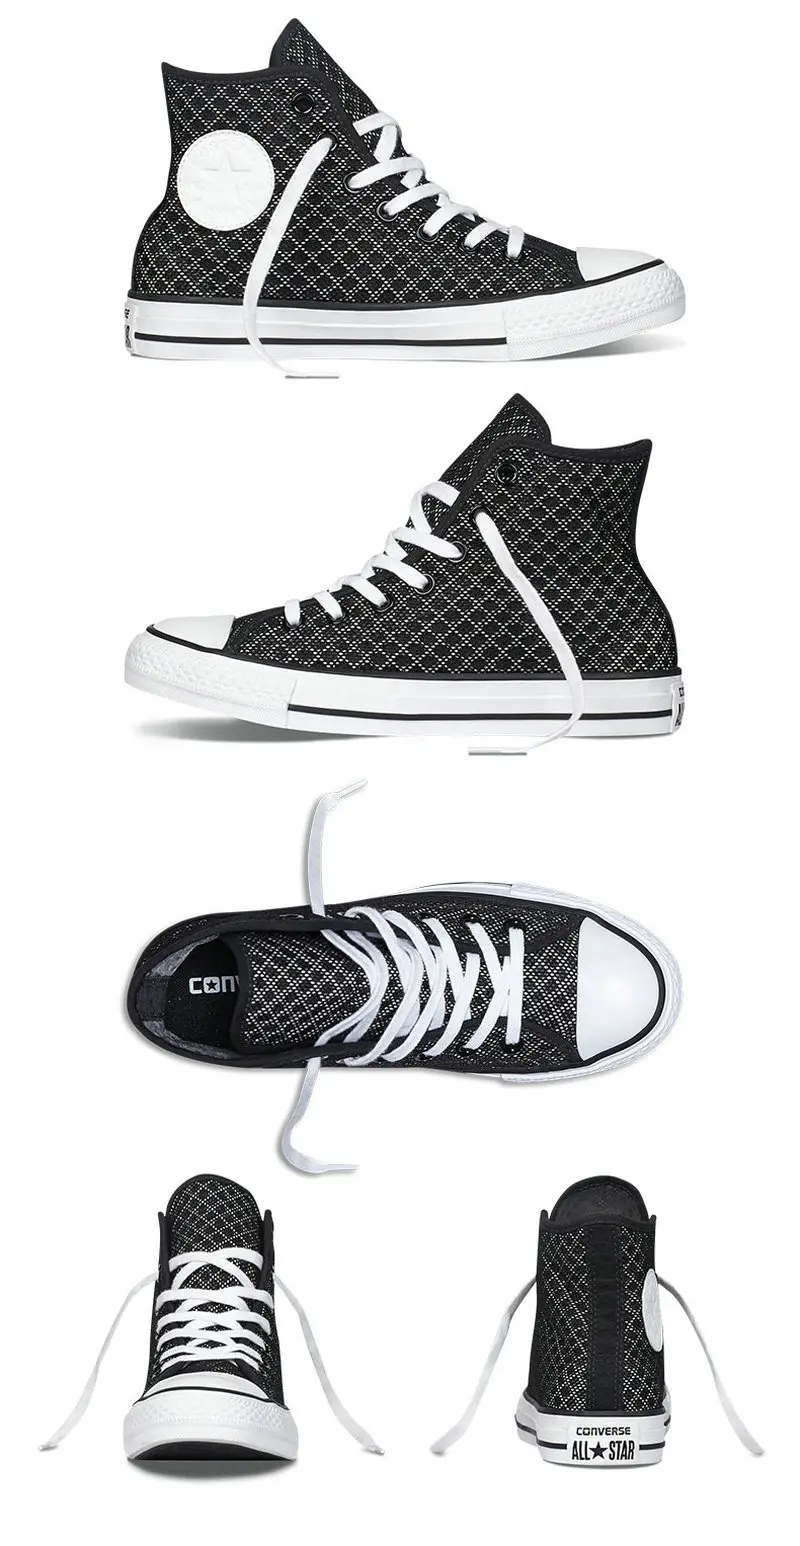 Converse Оригинальные кроссовки в черно-белую полоску Кроссовки парусиновые туфли для мальчиков и девочек высокое Скейтбординг обувь 154118C